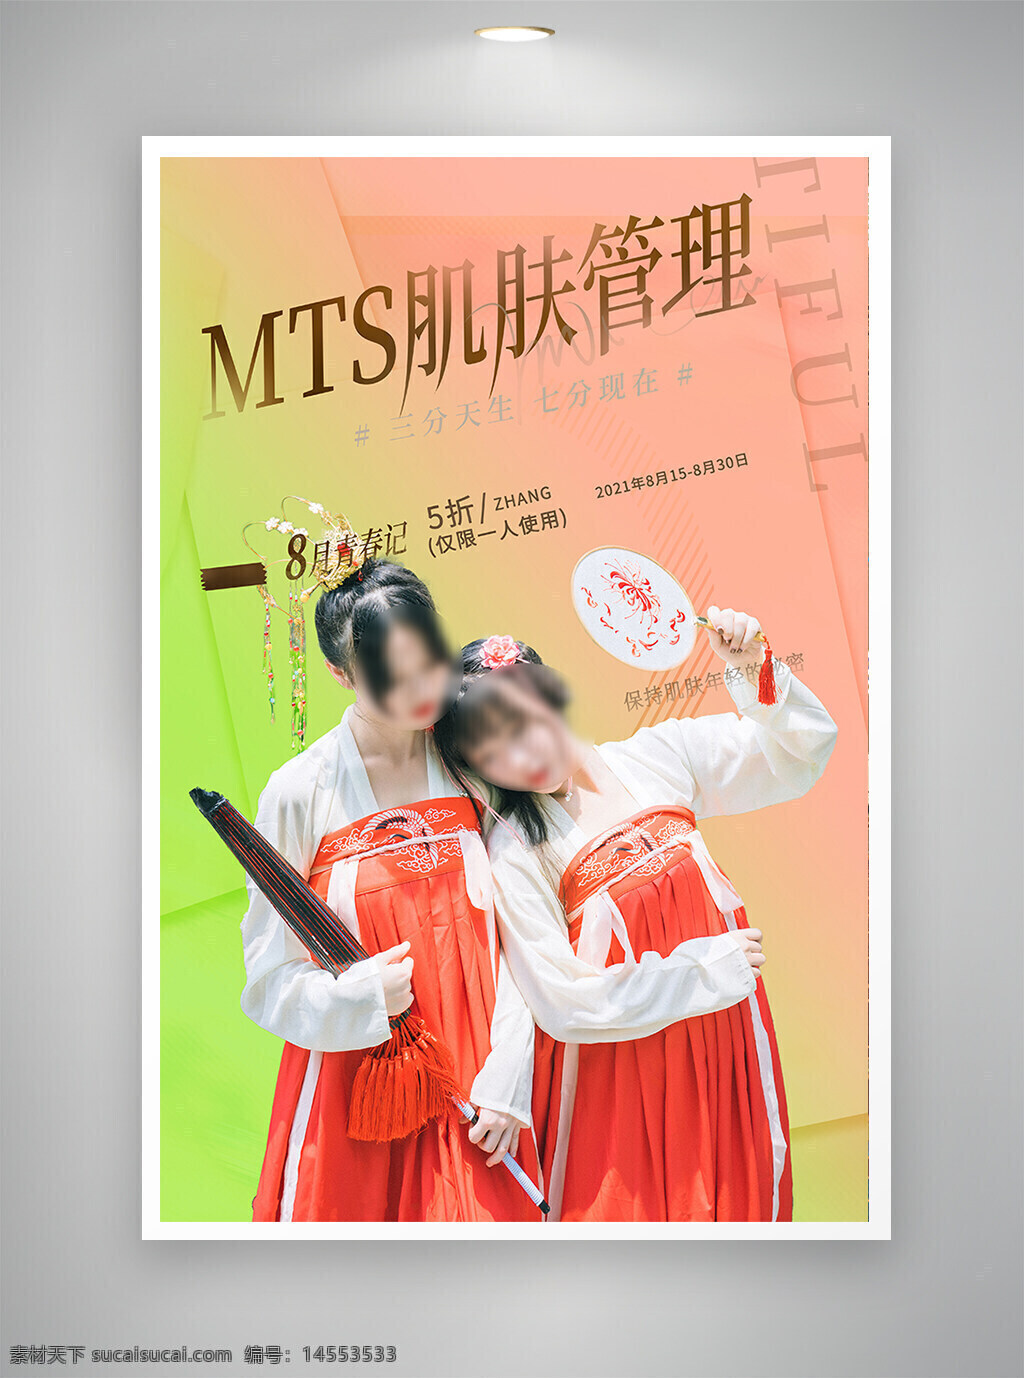 中国风海报 促销海报 节日海报 古风海报 医美海报